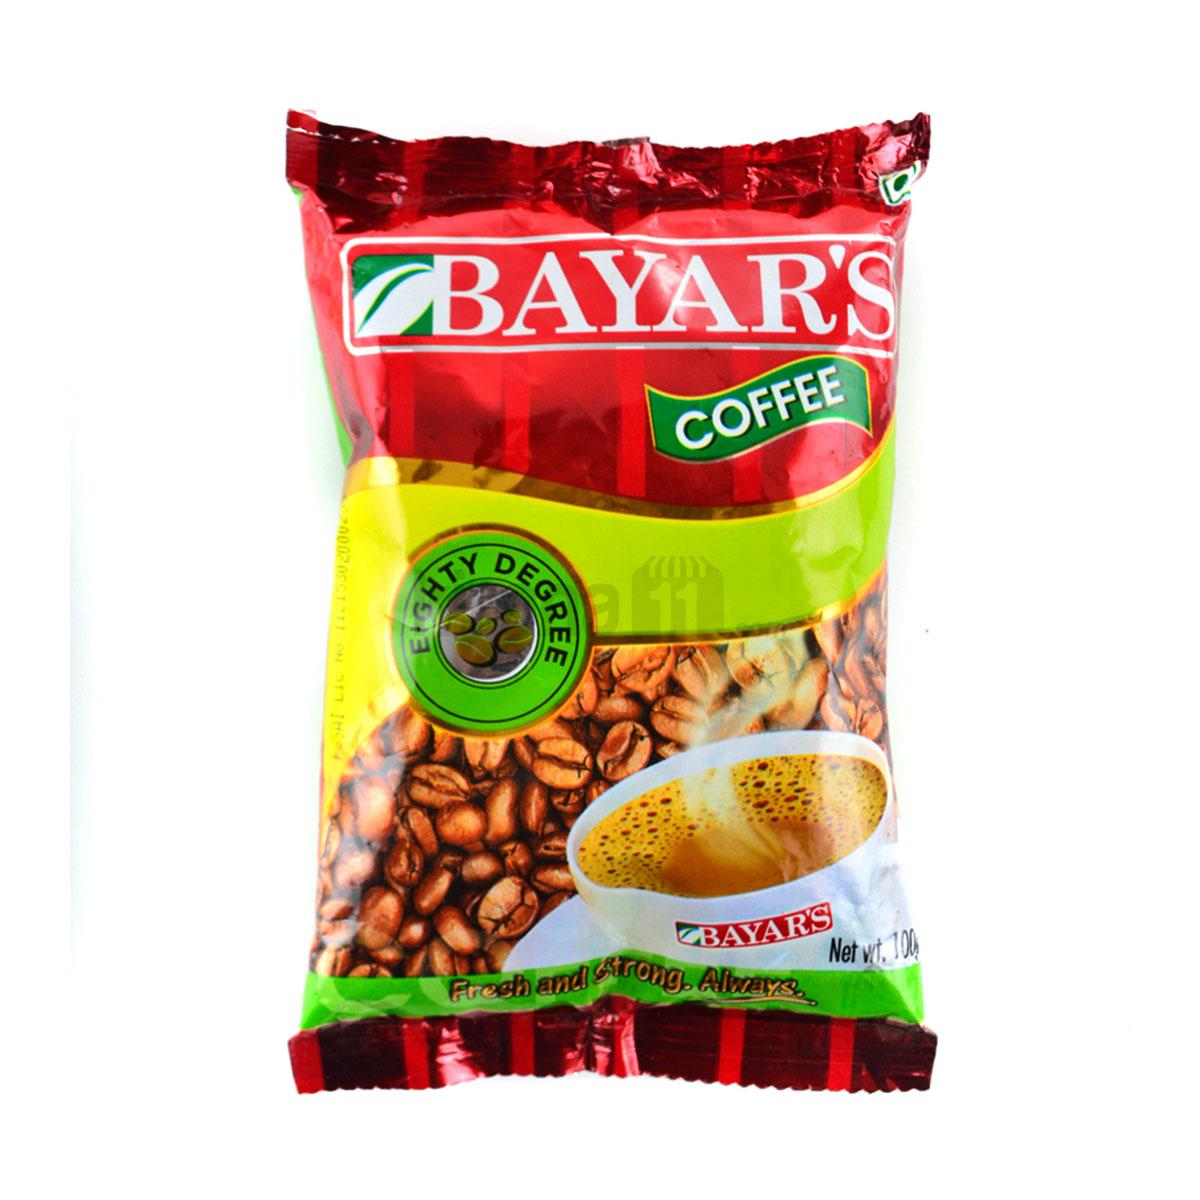 bayar’s-coffee